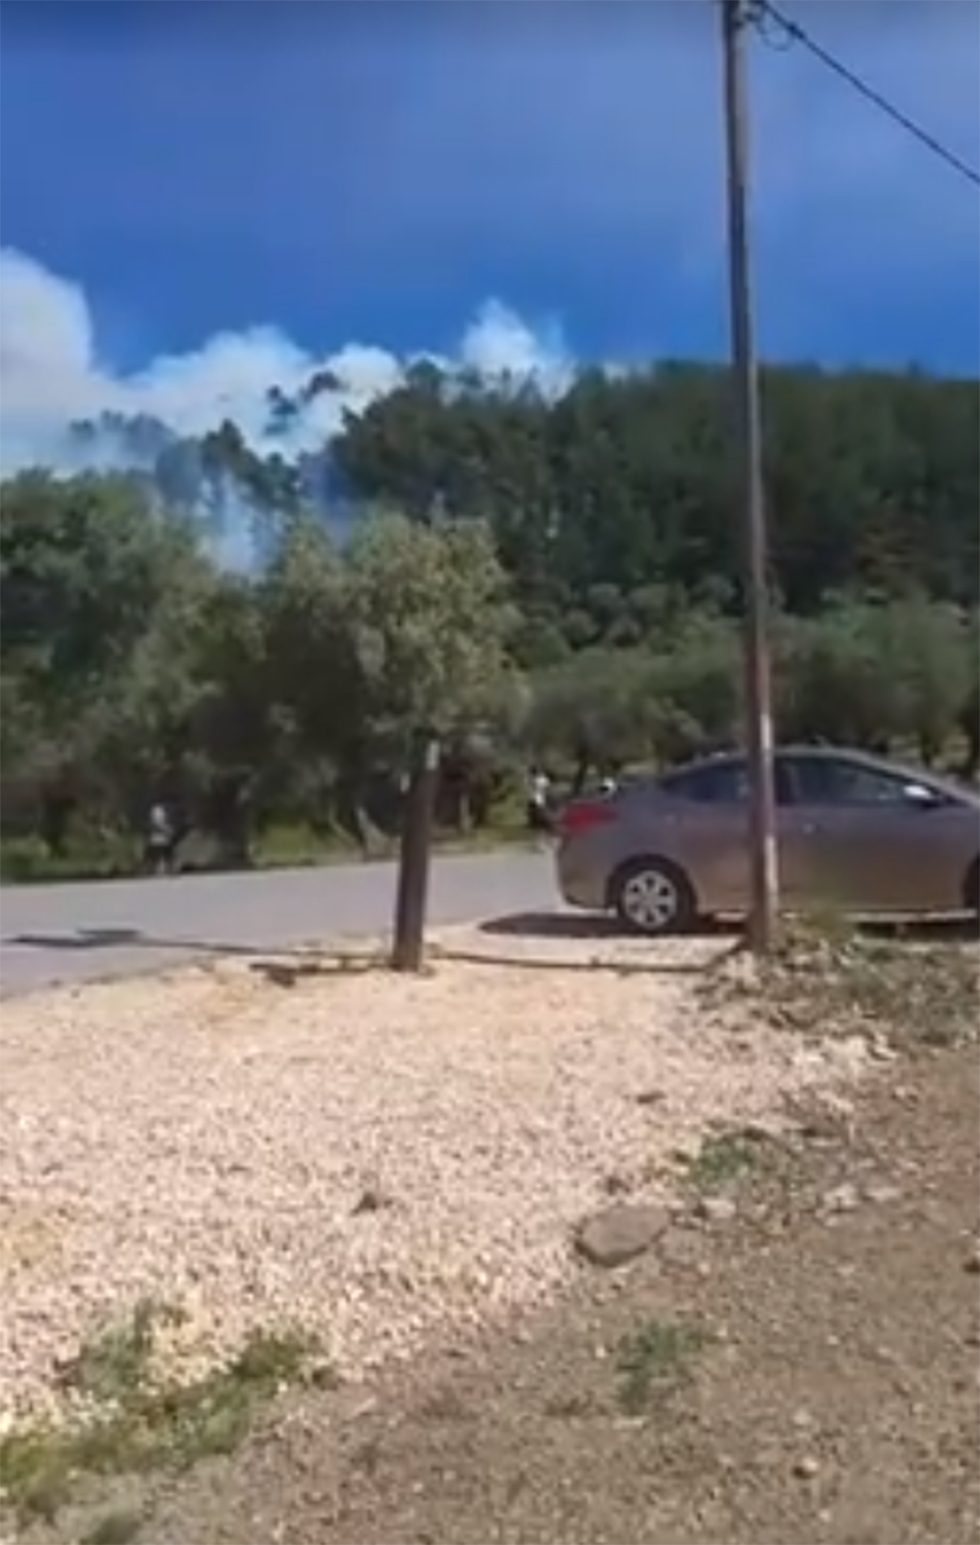 עשרות דונמים כבר נשרפו. אזור השריפה ביער ביריה (צילום: ירושה ולוטקר, חדשות בזמן בפייסבוק) (צילום: ירושה ולוטקר, חדשות בזמן בפייסבוק)